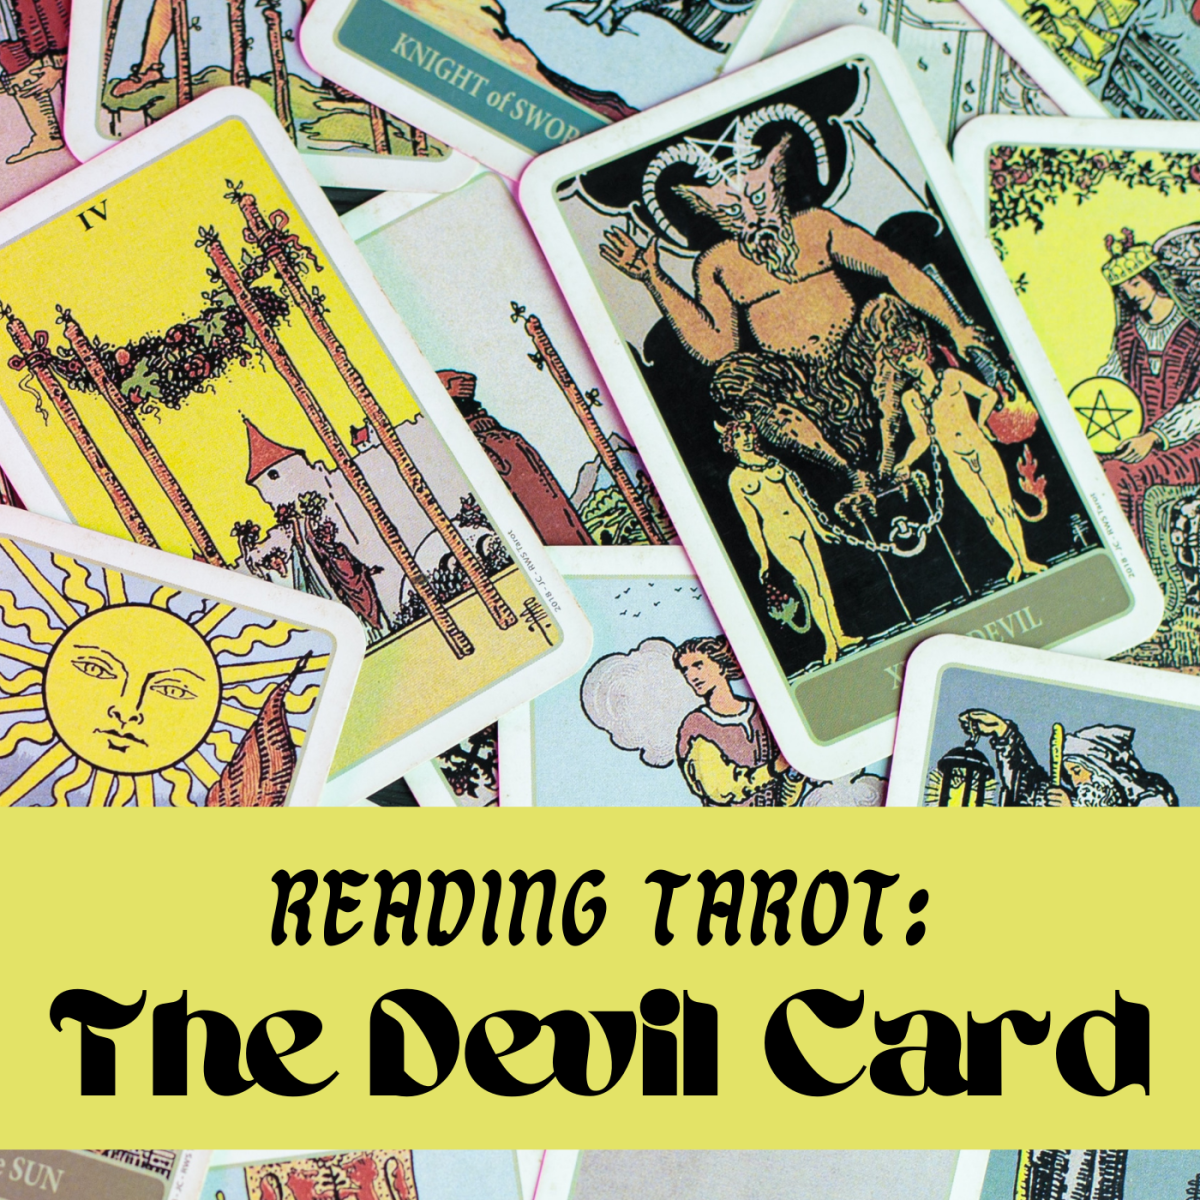 塔罗牌中的魔鬼牌让人毛骨悚然，但它可能表明你有一些积极的品质。不要让卡片吓到你。